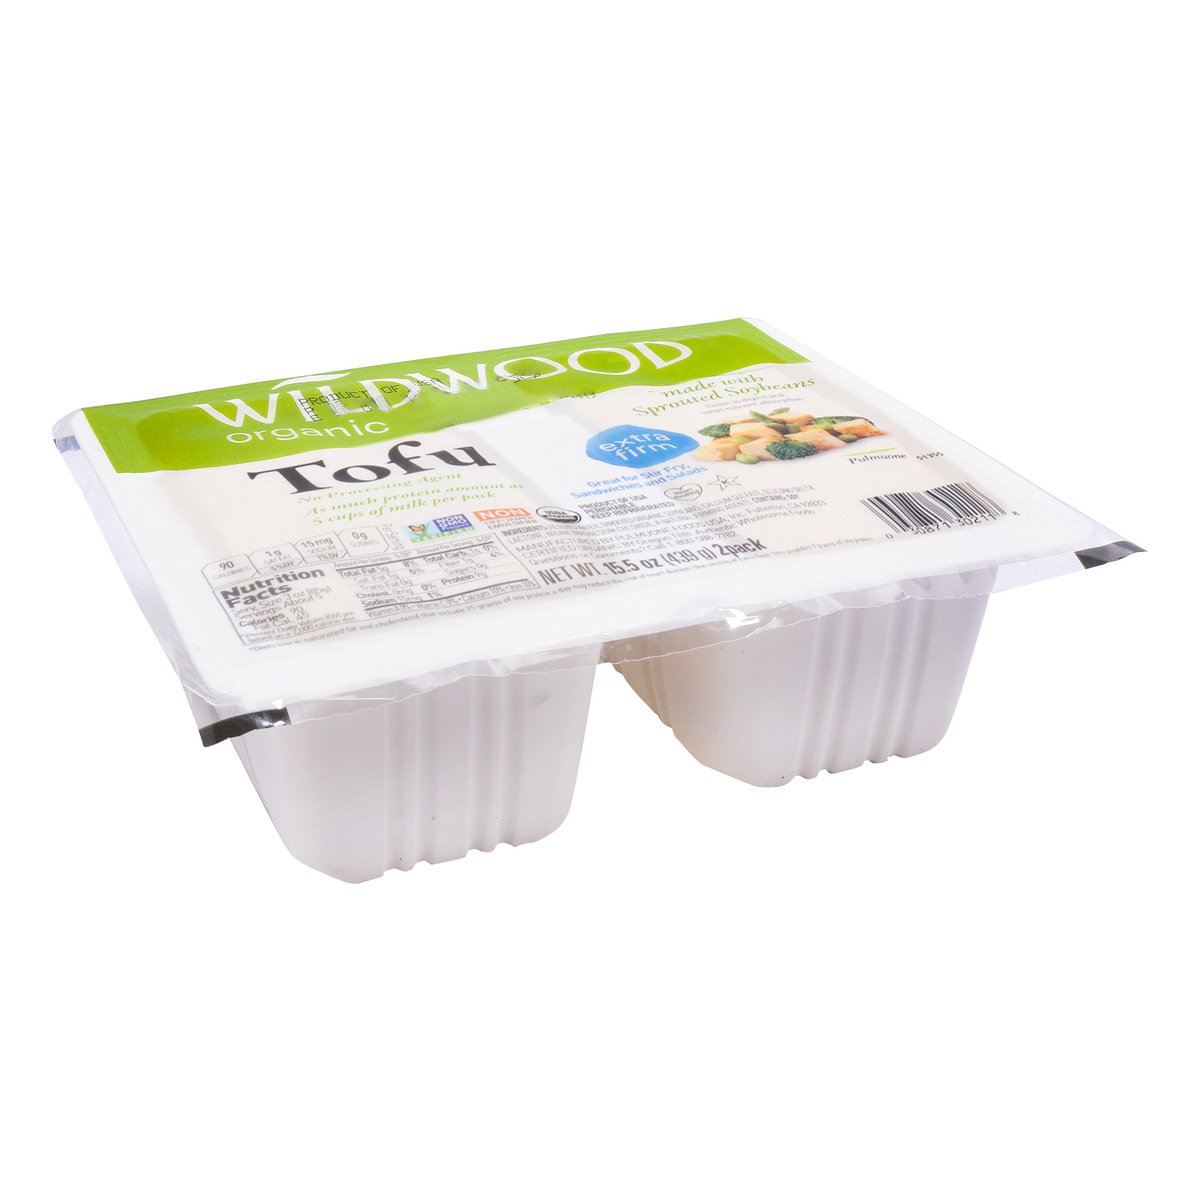 Wildwood Organic Tofu Extra Firm 439 g